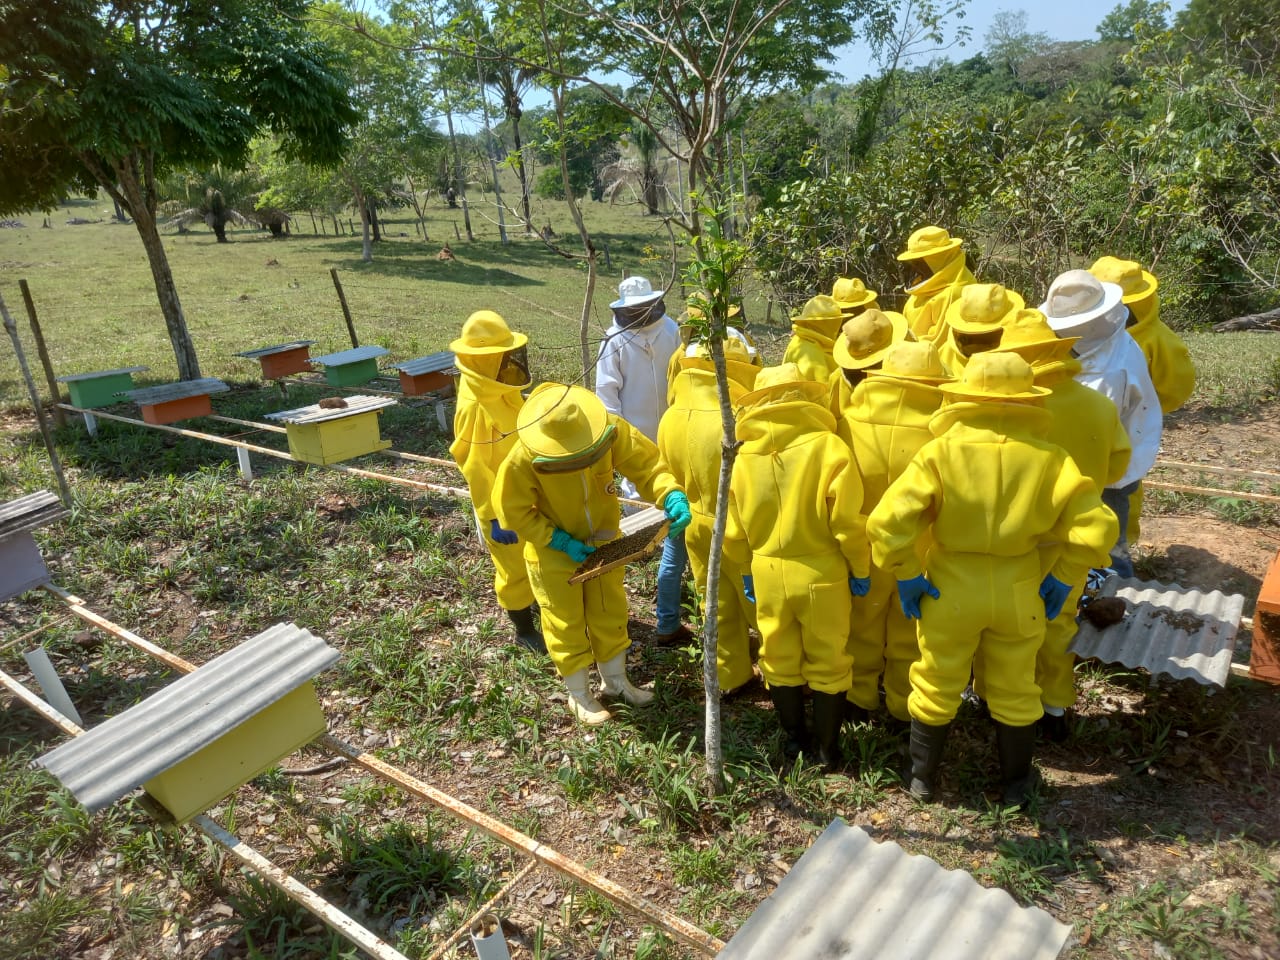 Sancionada a lei que regulamenta a criação de abelhas sem ferrão na área urbana de Porto Velho